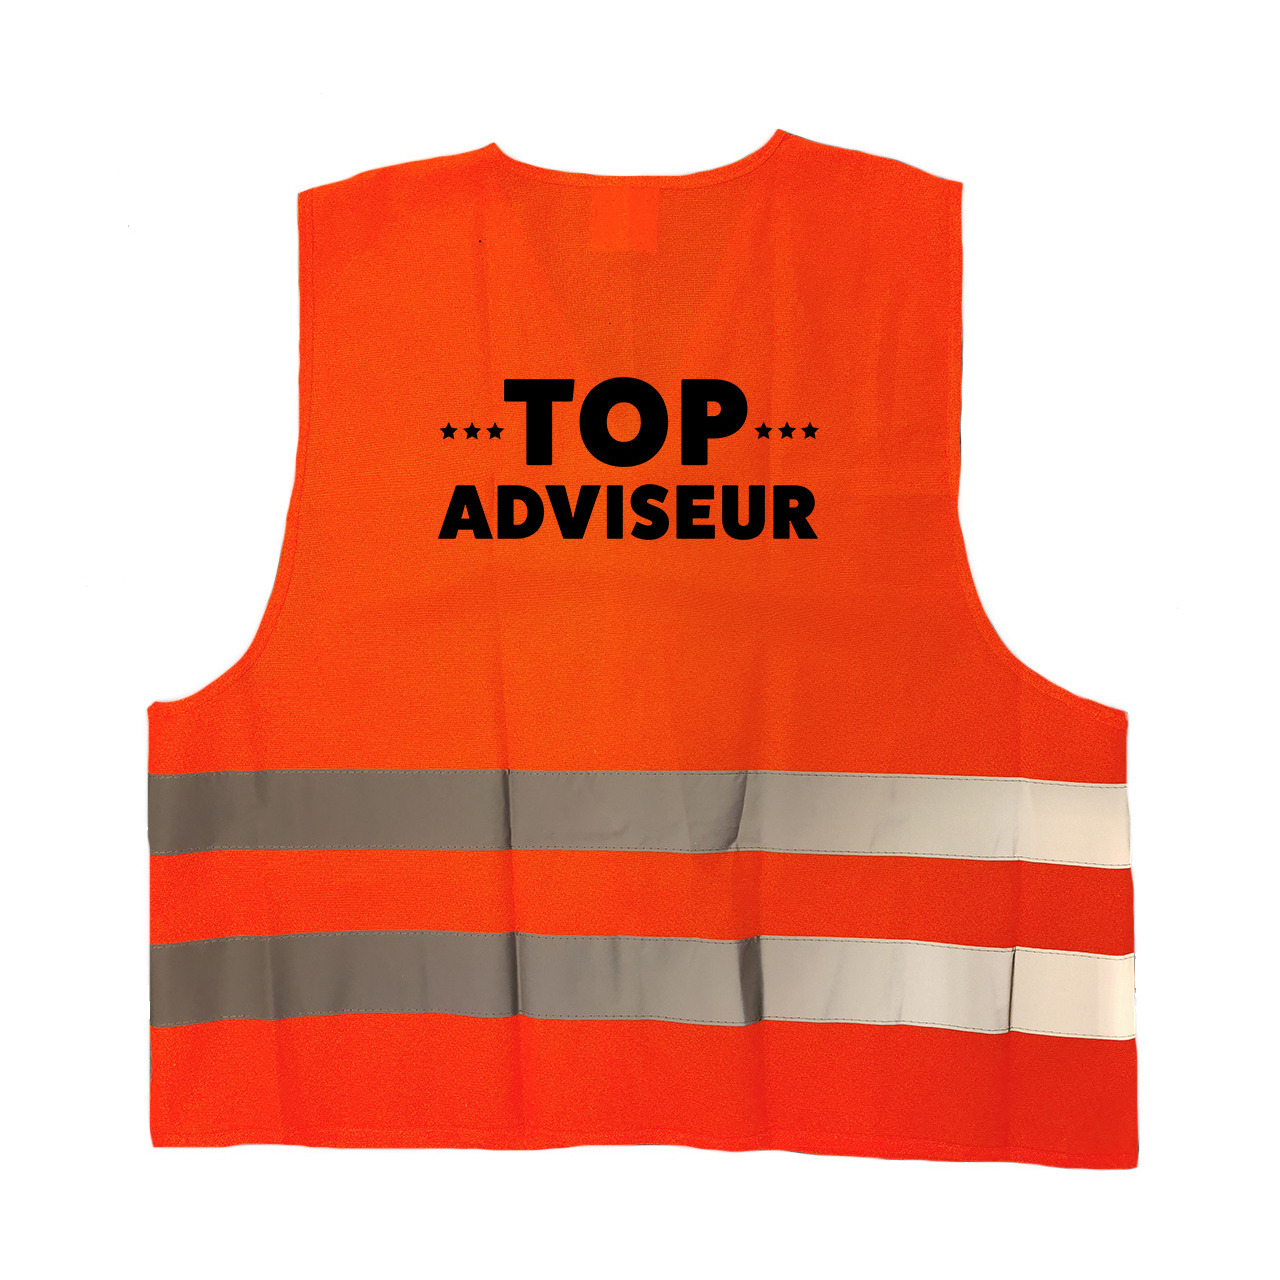 Top adviseur personeel vestje-hesje oranje met reflecterende strepen voor volwassenen